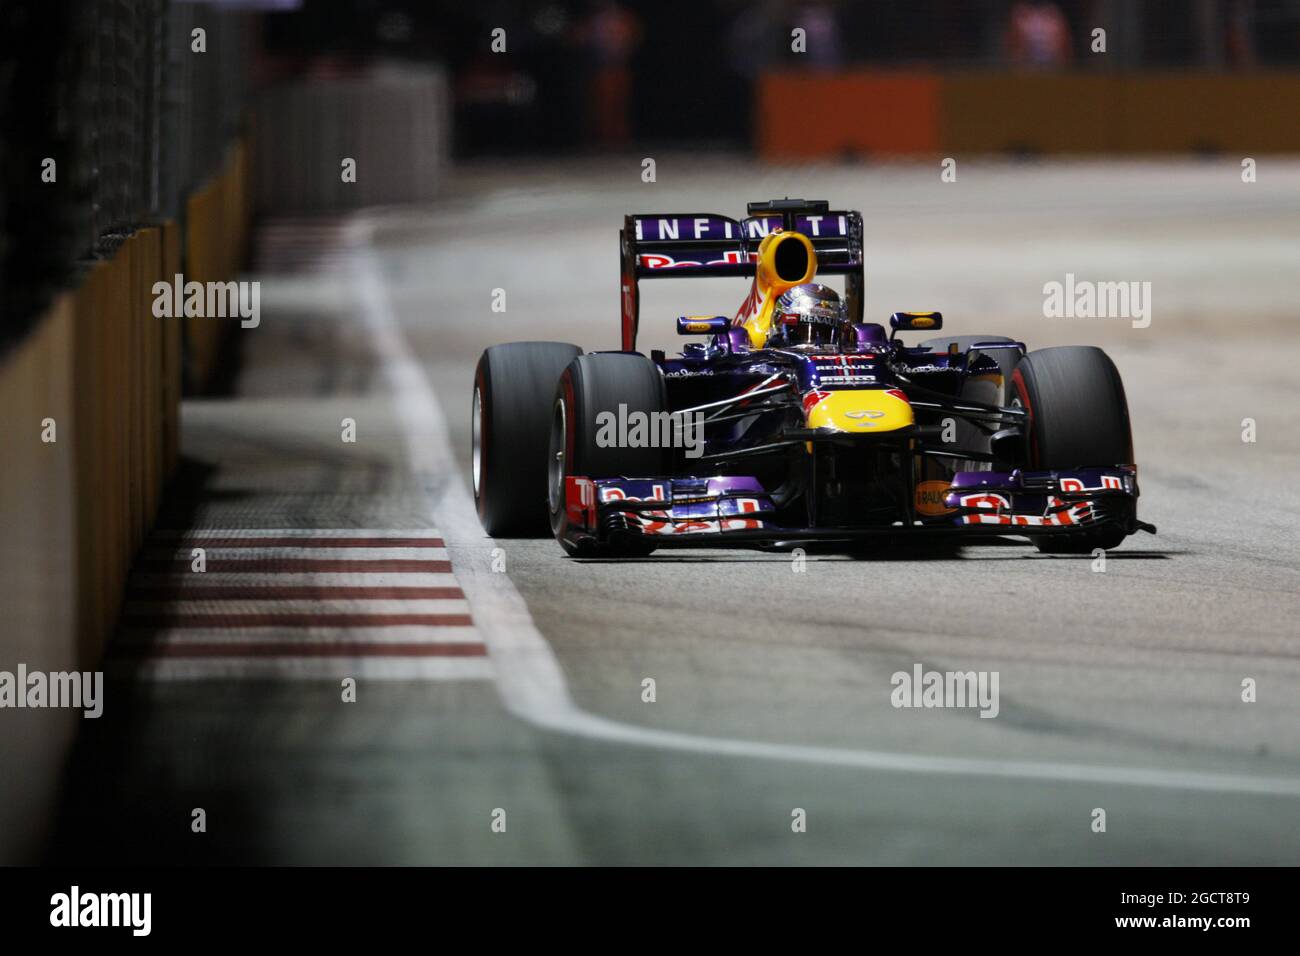 Sebastian Vettel (GER) Red Bull Racing RB9. Gran Premio di Singapore, domenica 22 settembre 2013. Circuito Marina Bay Street, Singapore. Foto Stock